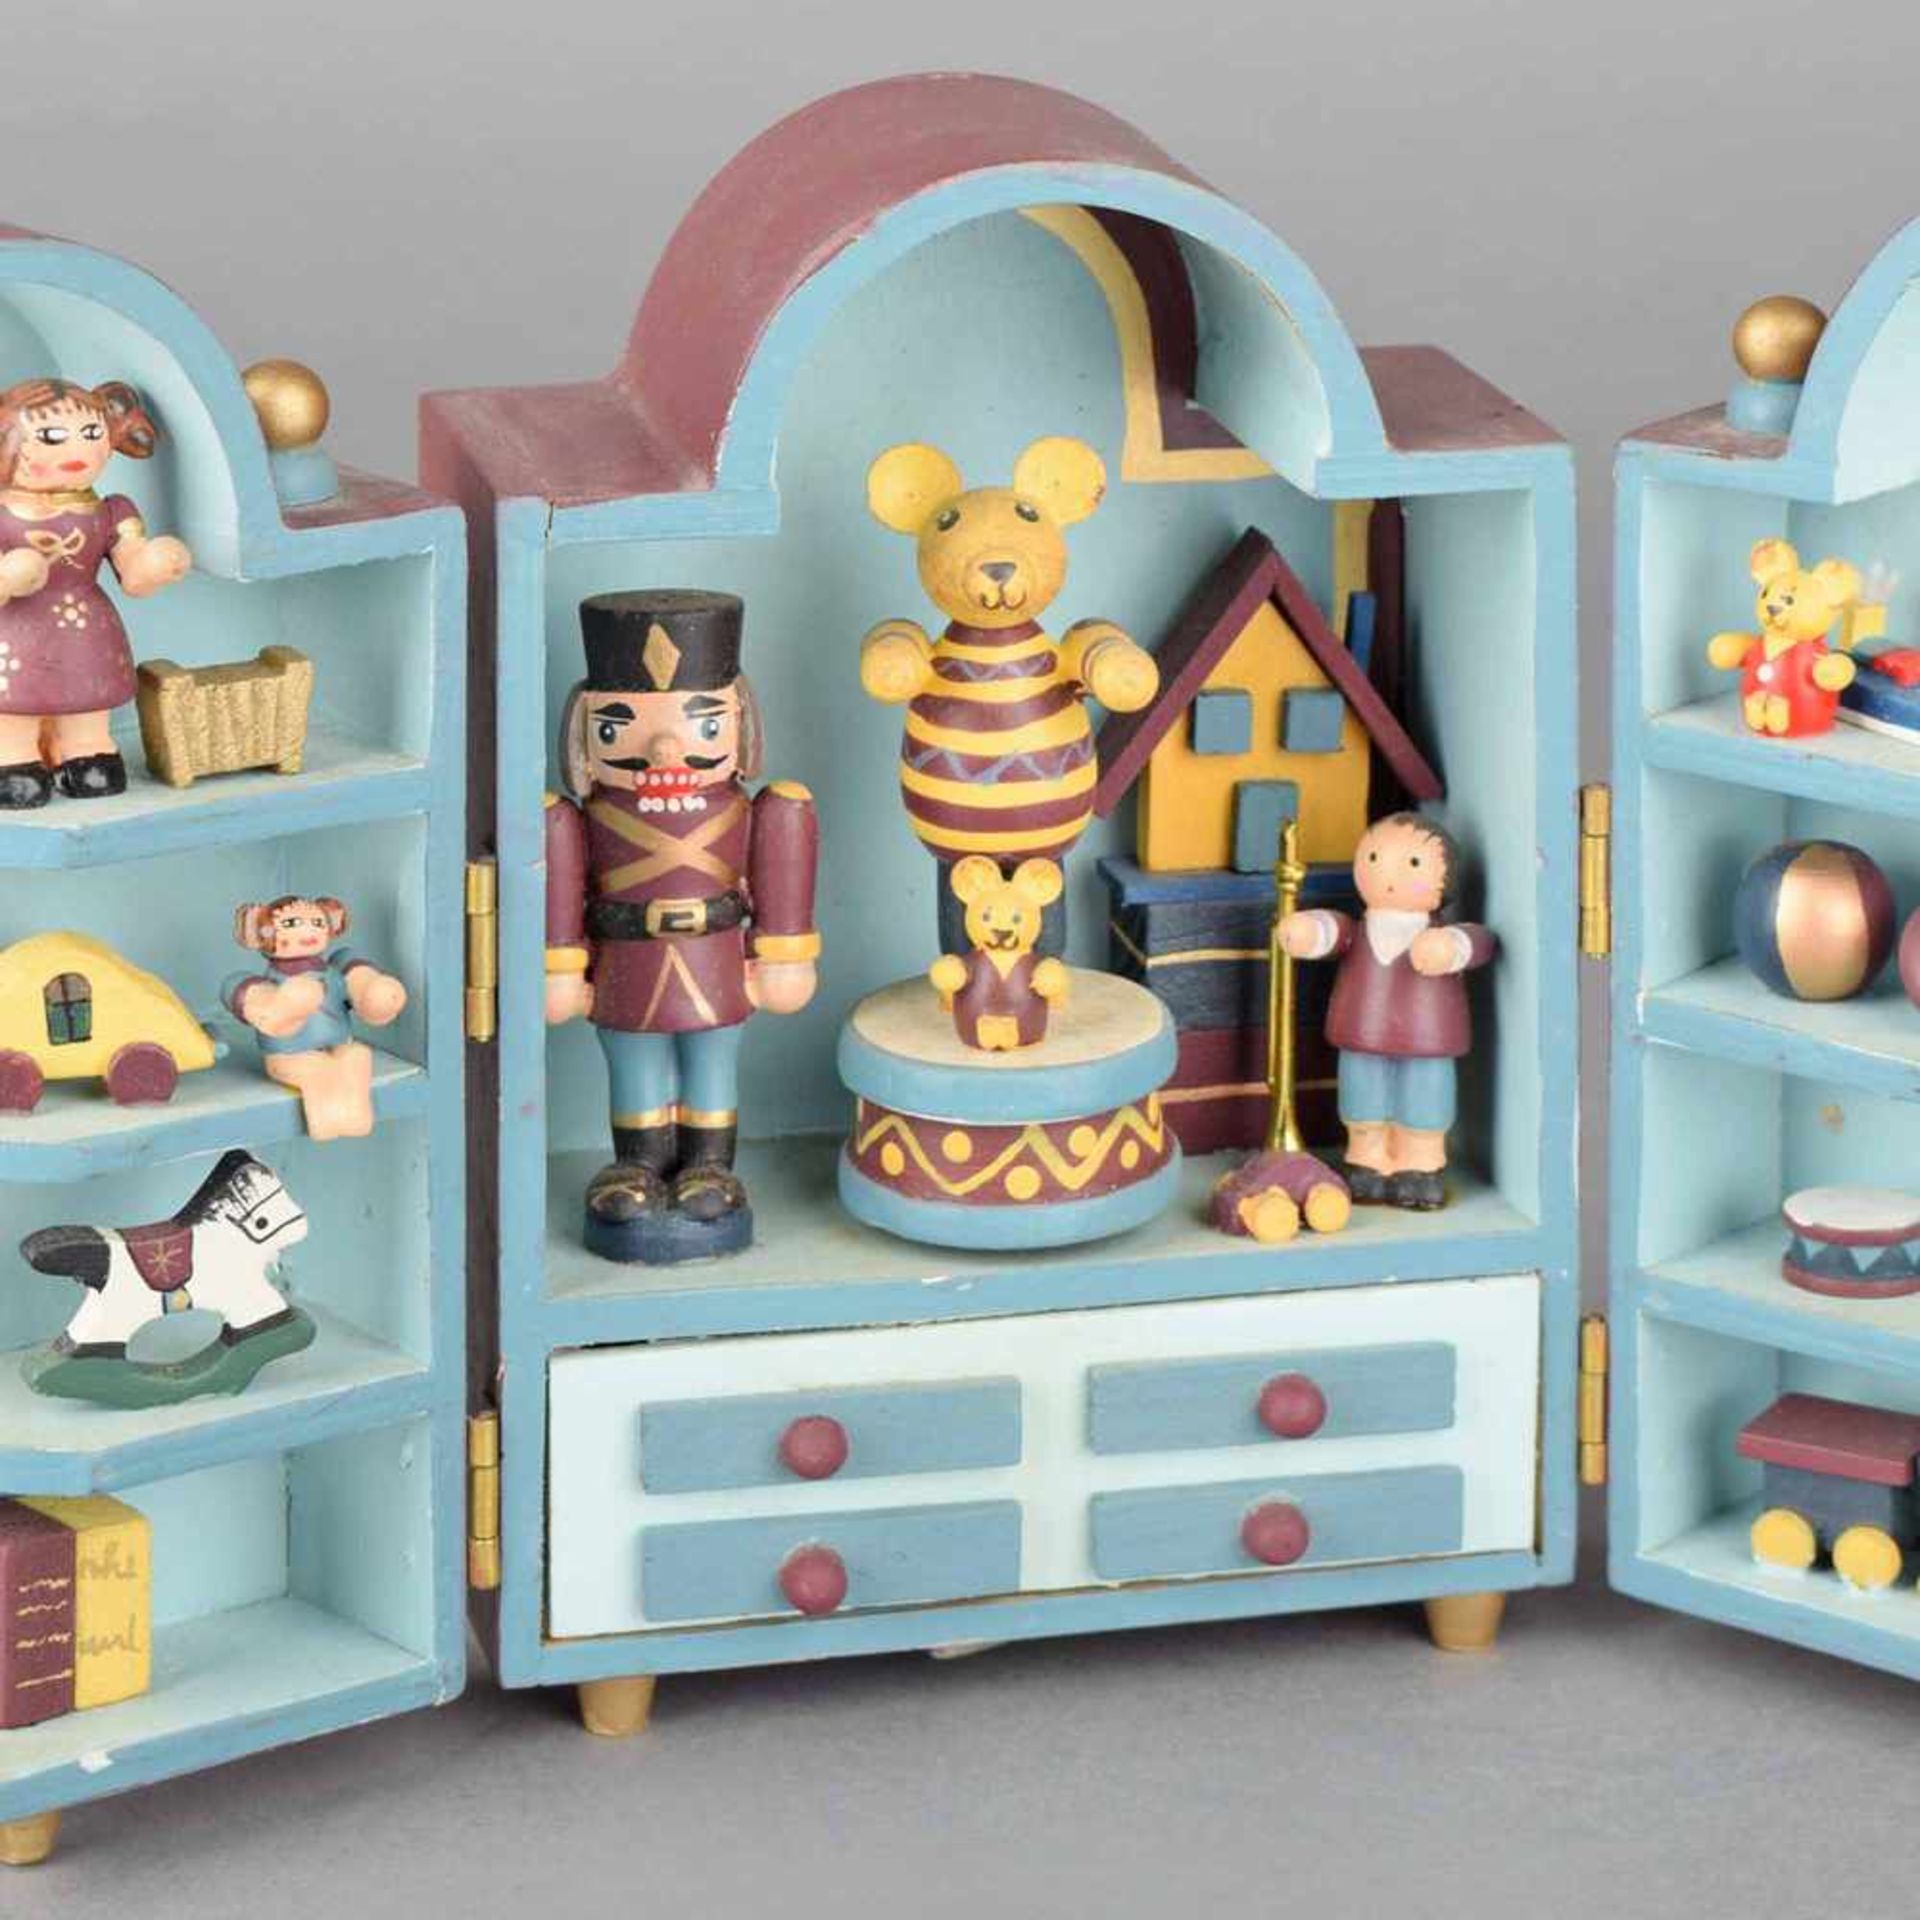 Spieldose Holz farbig bemalt, gestaltet in Form eines aufklappbaren Schrankes mit Spielzeug